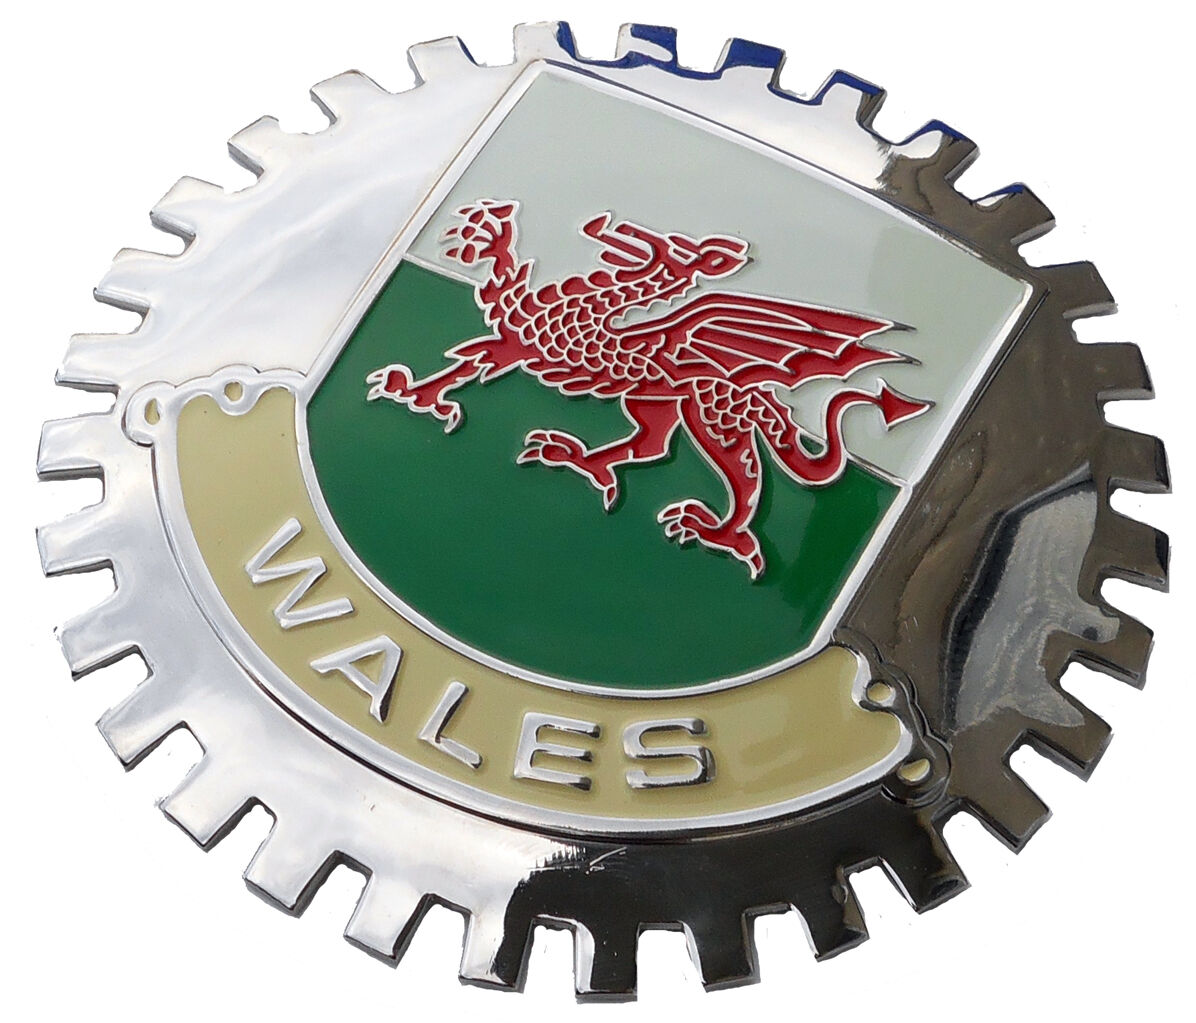 WALES car grille badge emblem (Welsh)